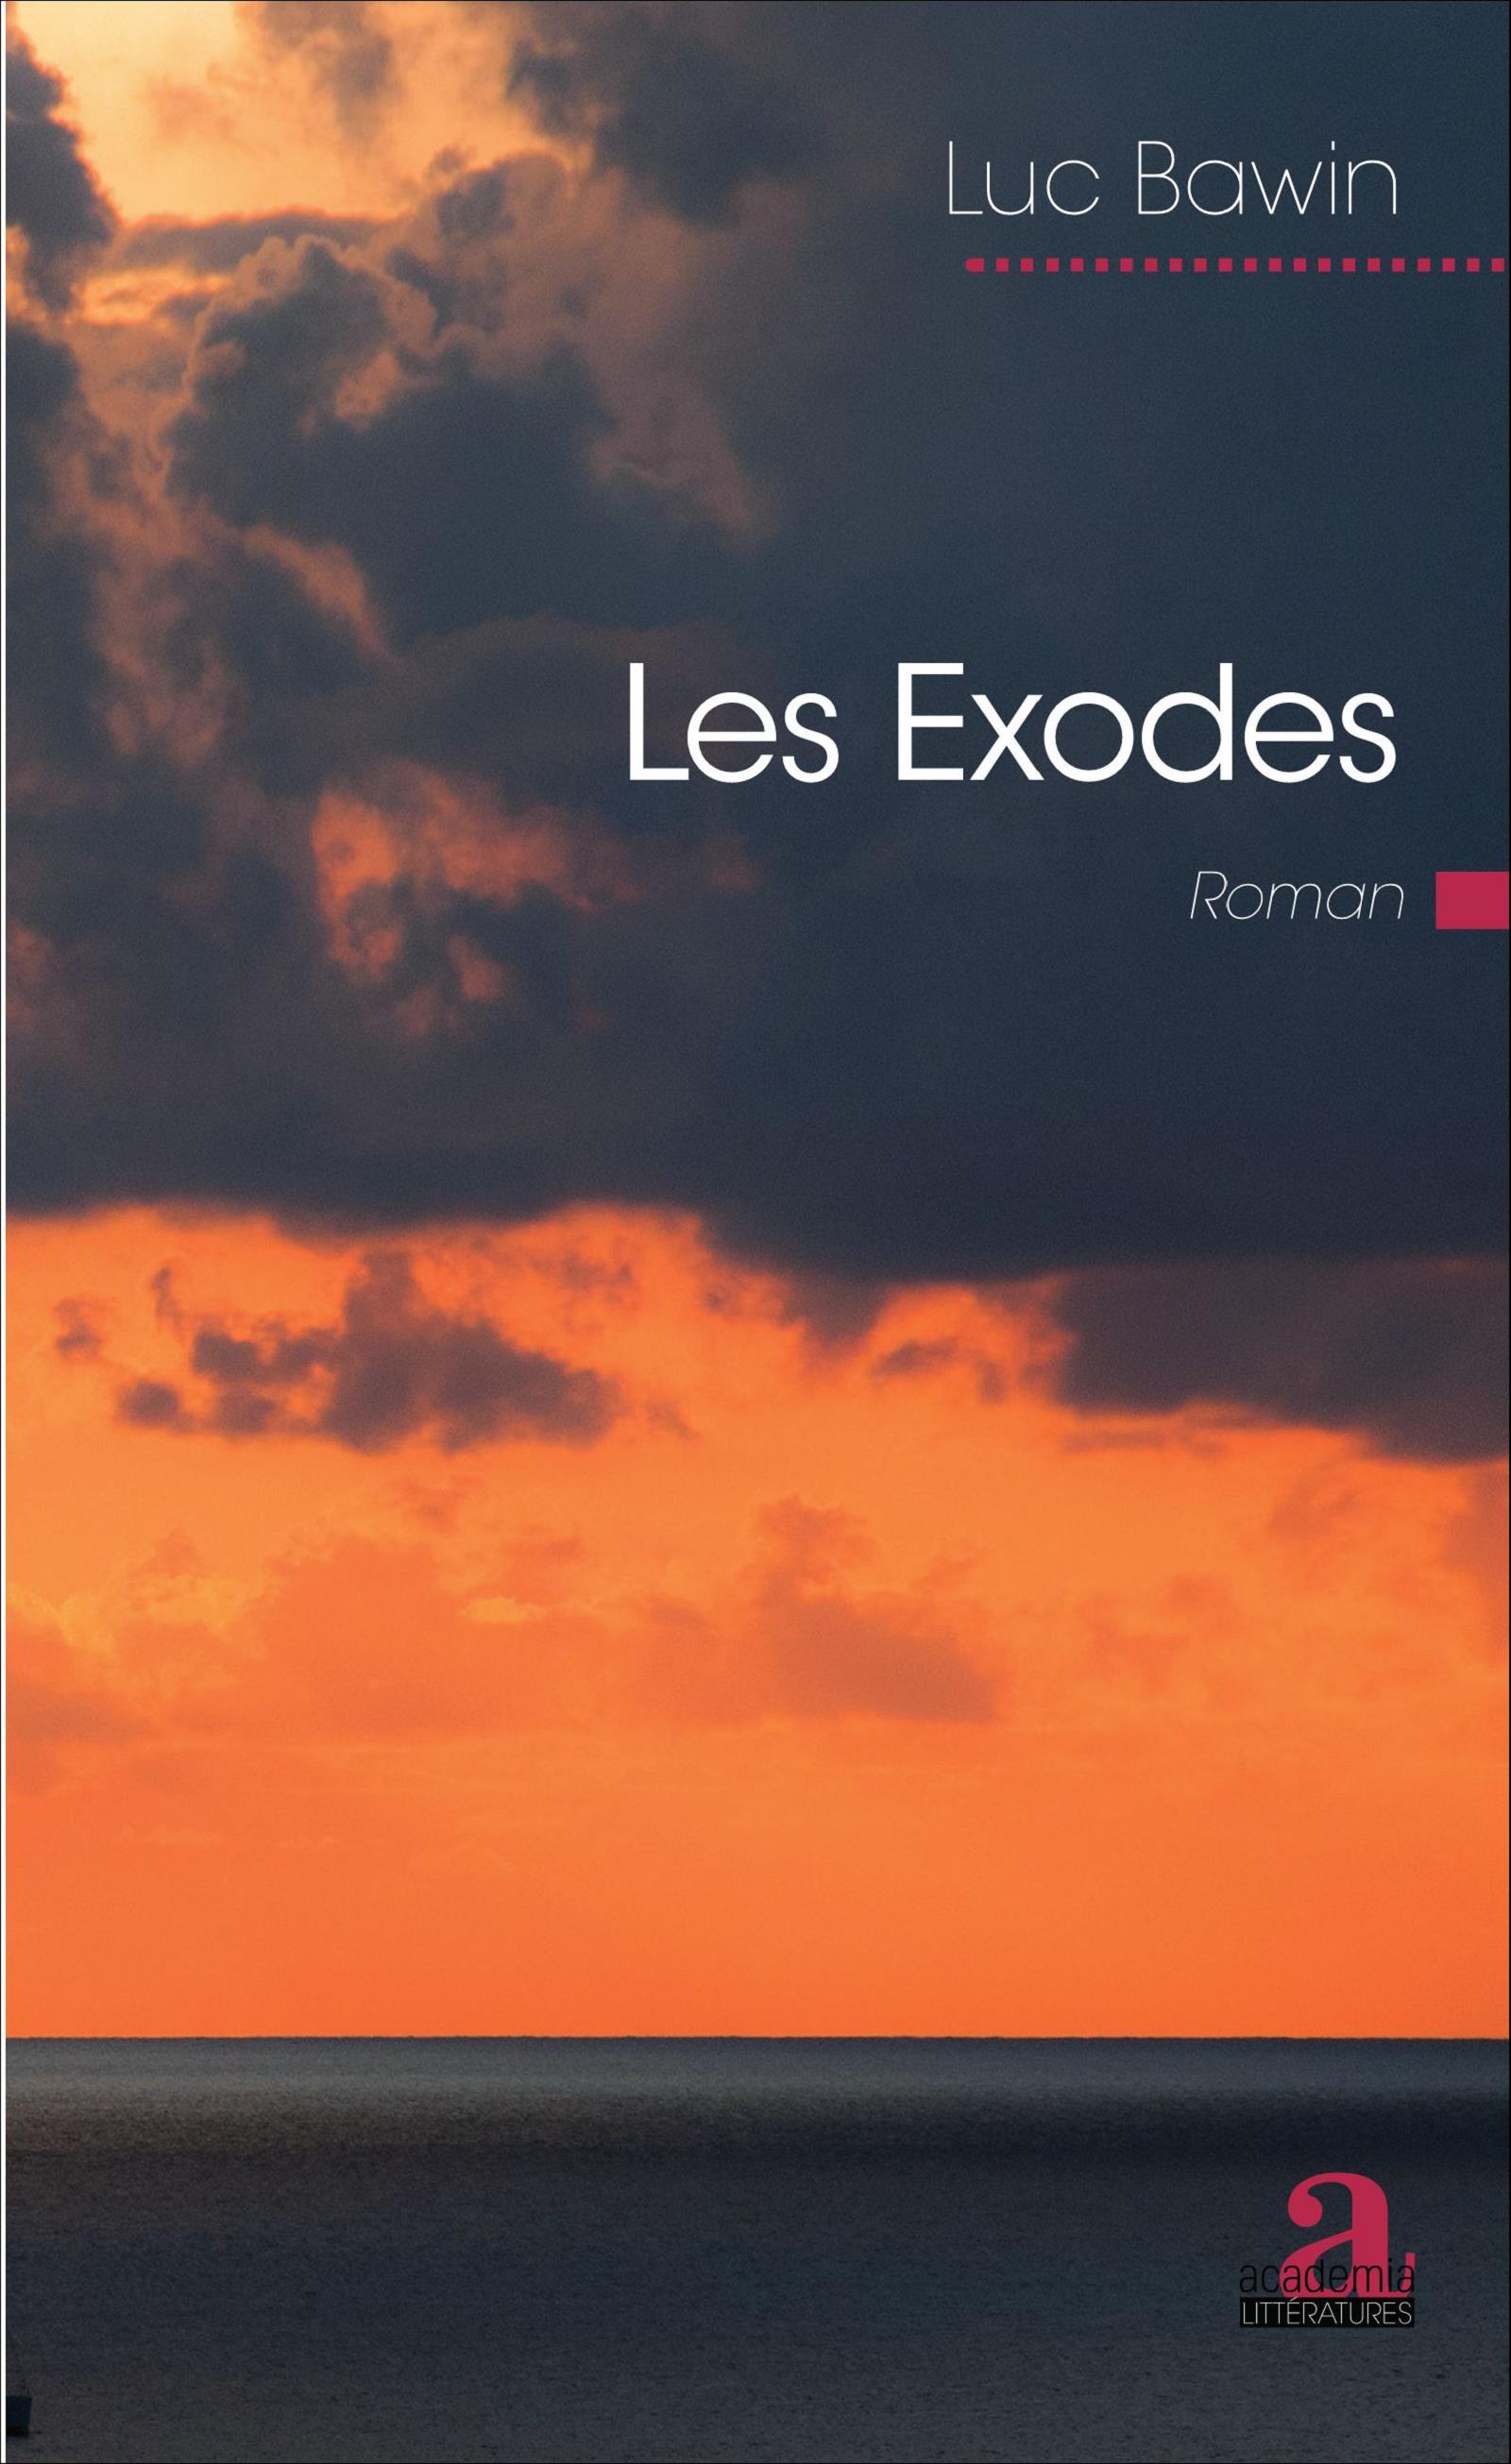 Les exodes, Roman (9782806102973-front-cover)